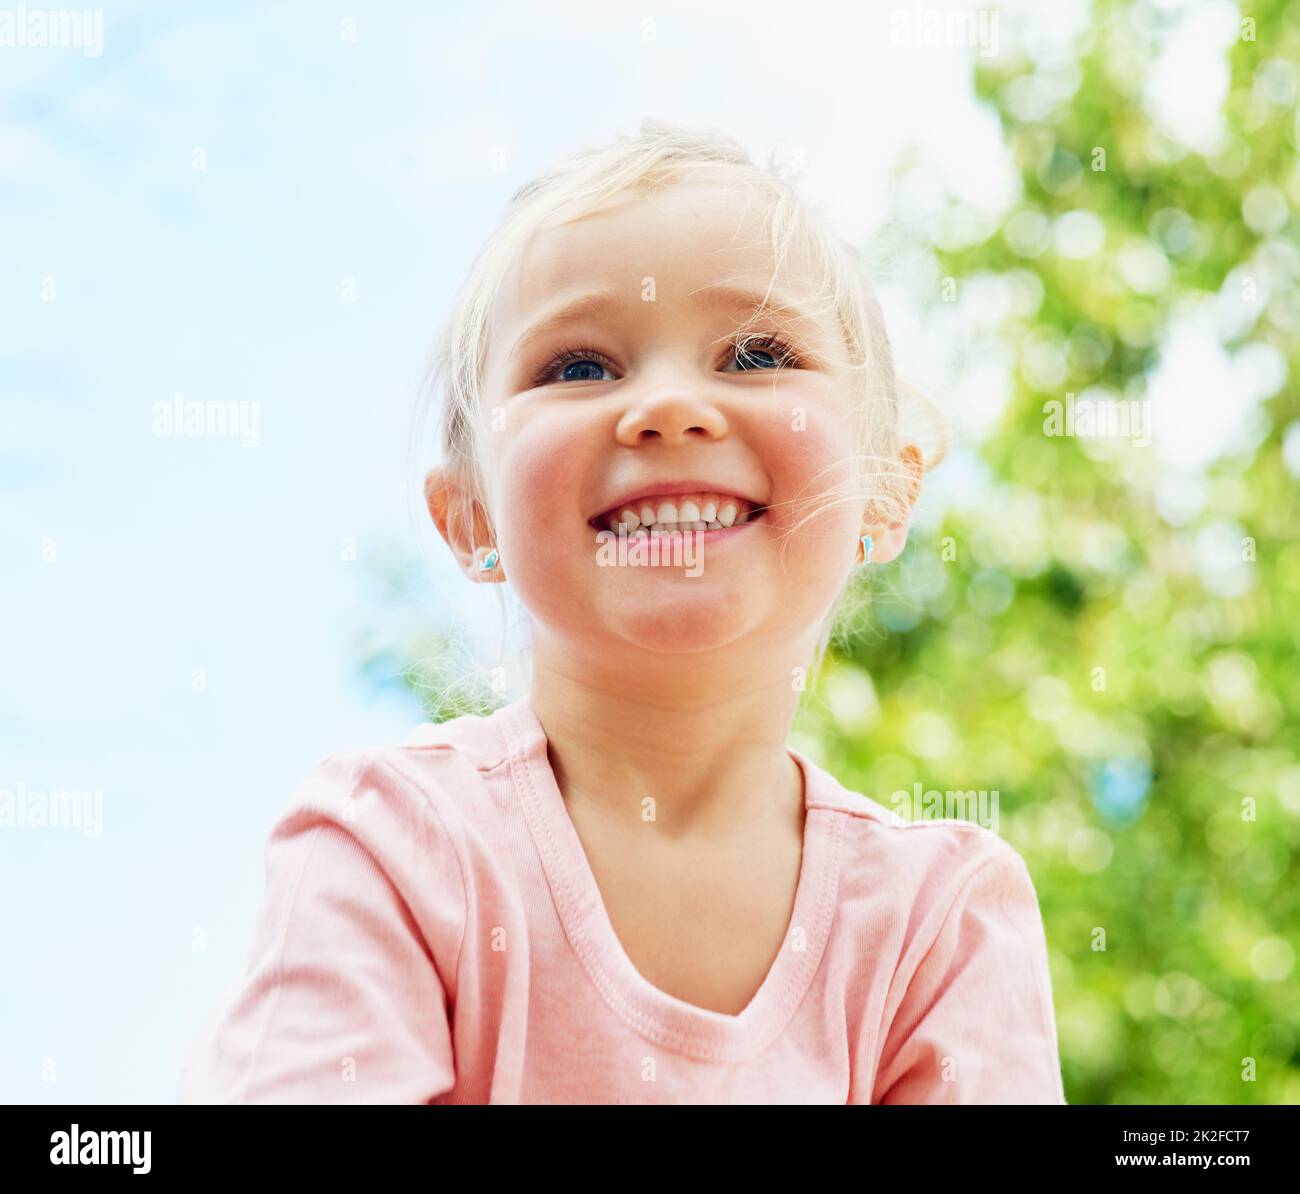 Divertimento sotto il sole estivo. Scatto di una ragazza piccola carina sorridente mentre gioca all'esterno. Foto Stock